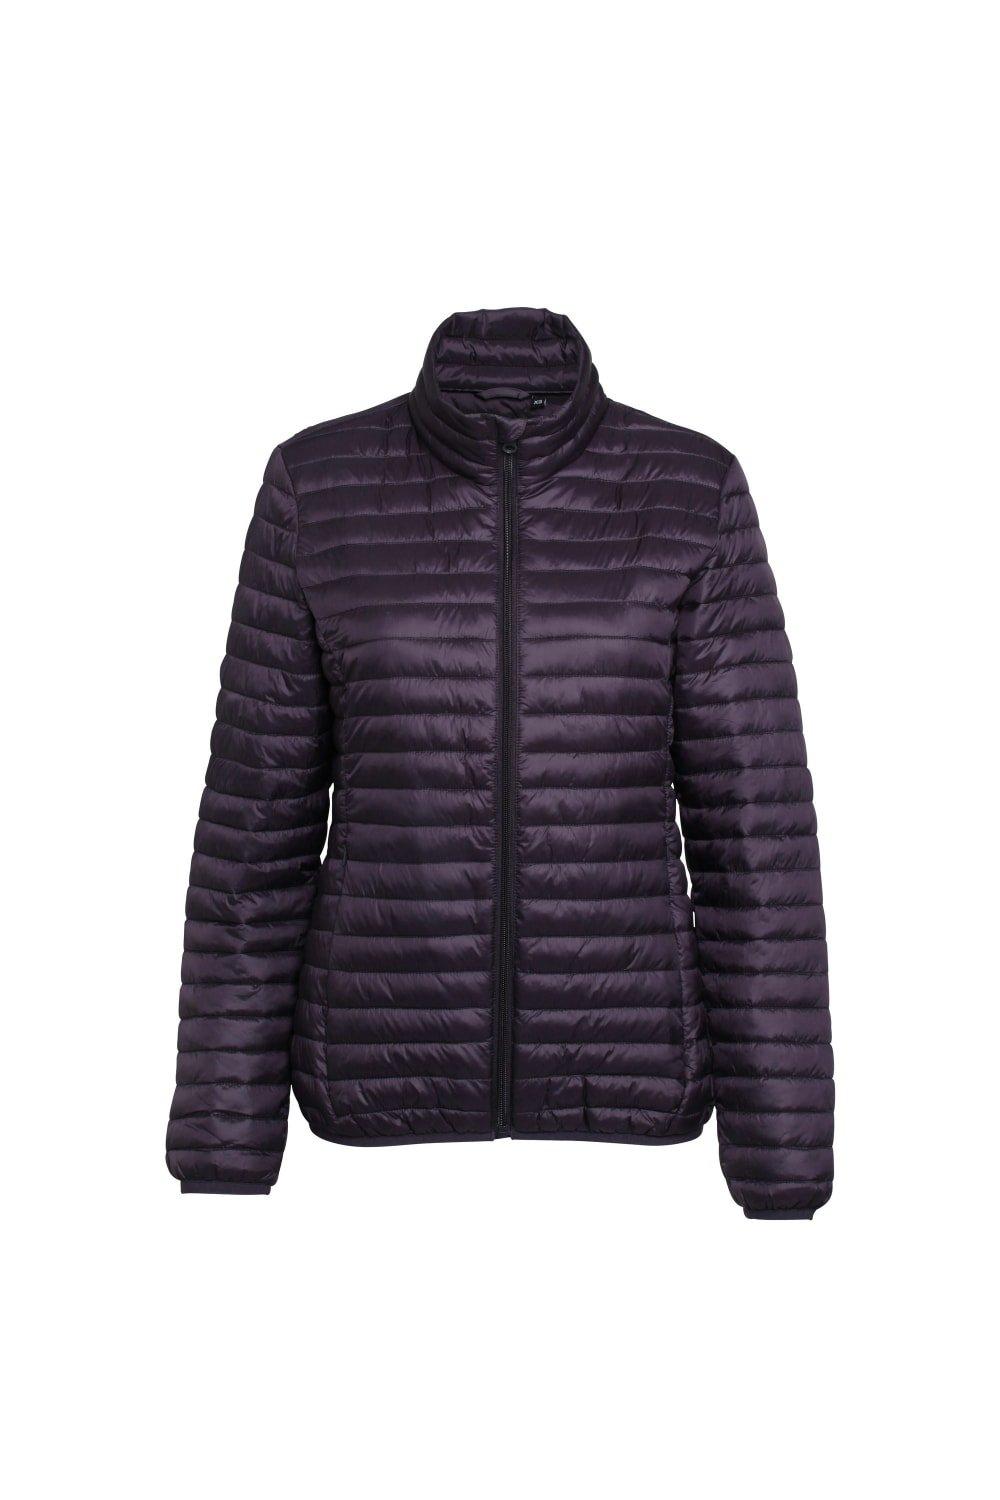 Утепленная куртка Fineline с капюшоном Tribe 2786, фиолетовый